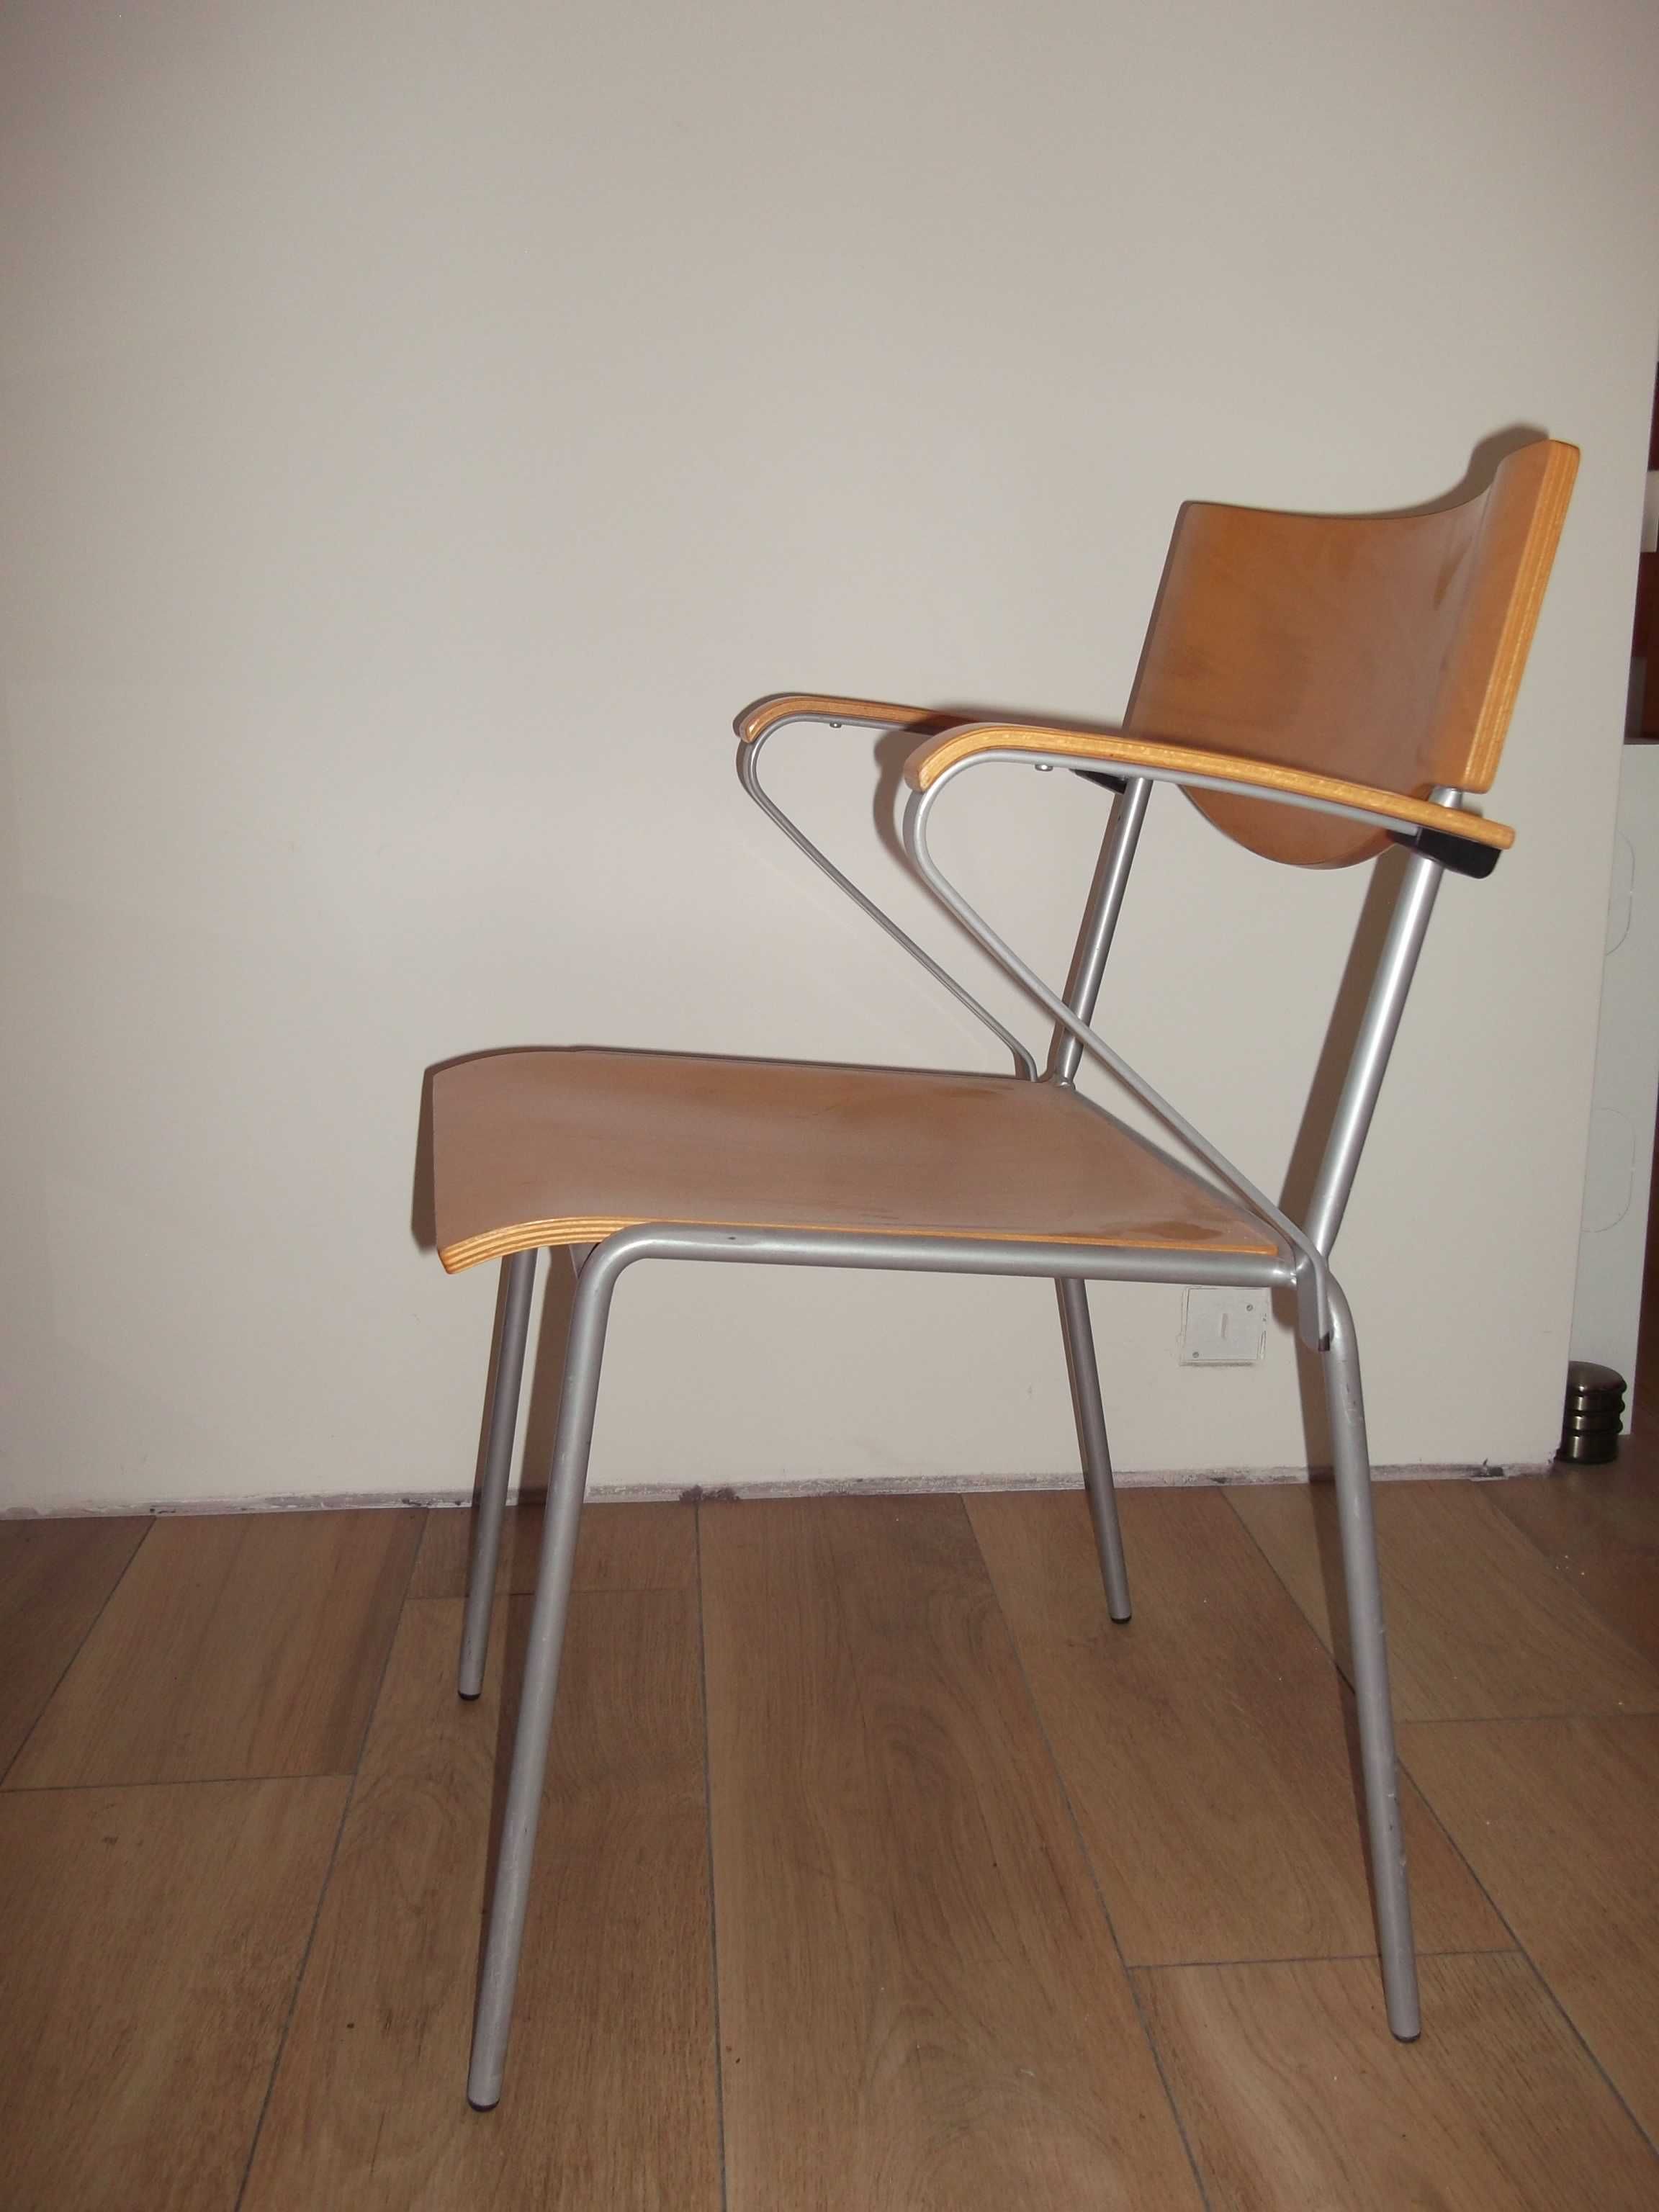 Krzesła z podłokietnikami metal + drewno 4 szt.